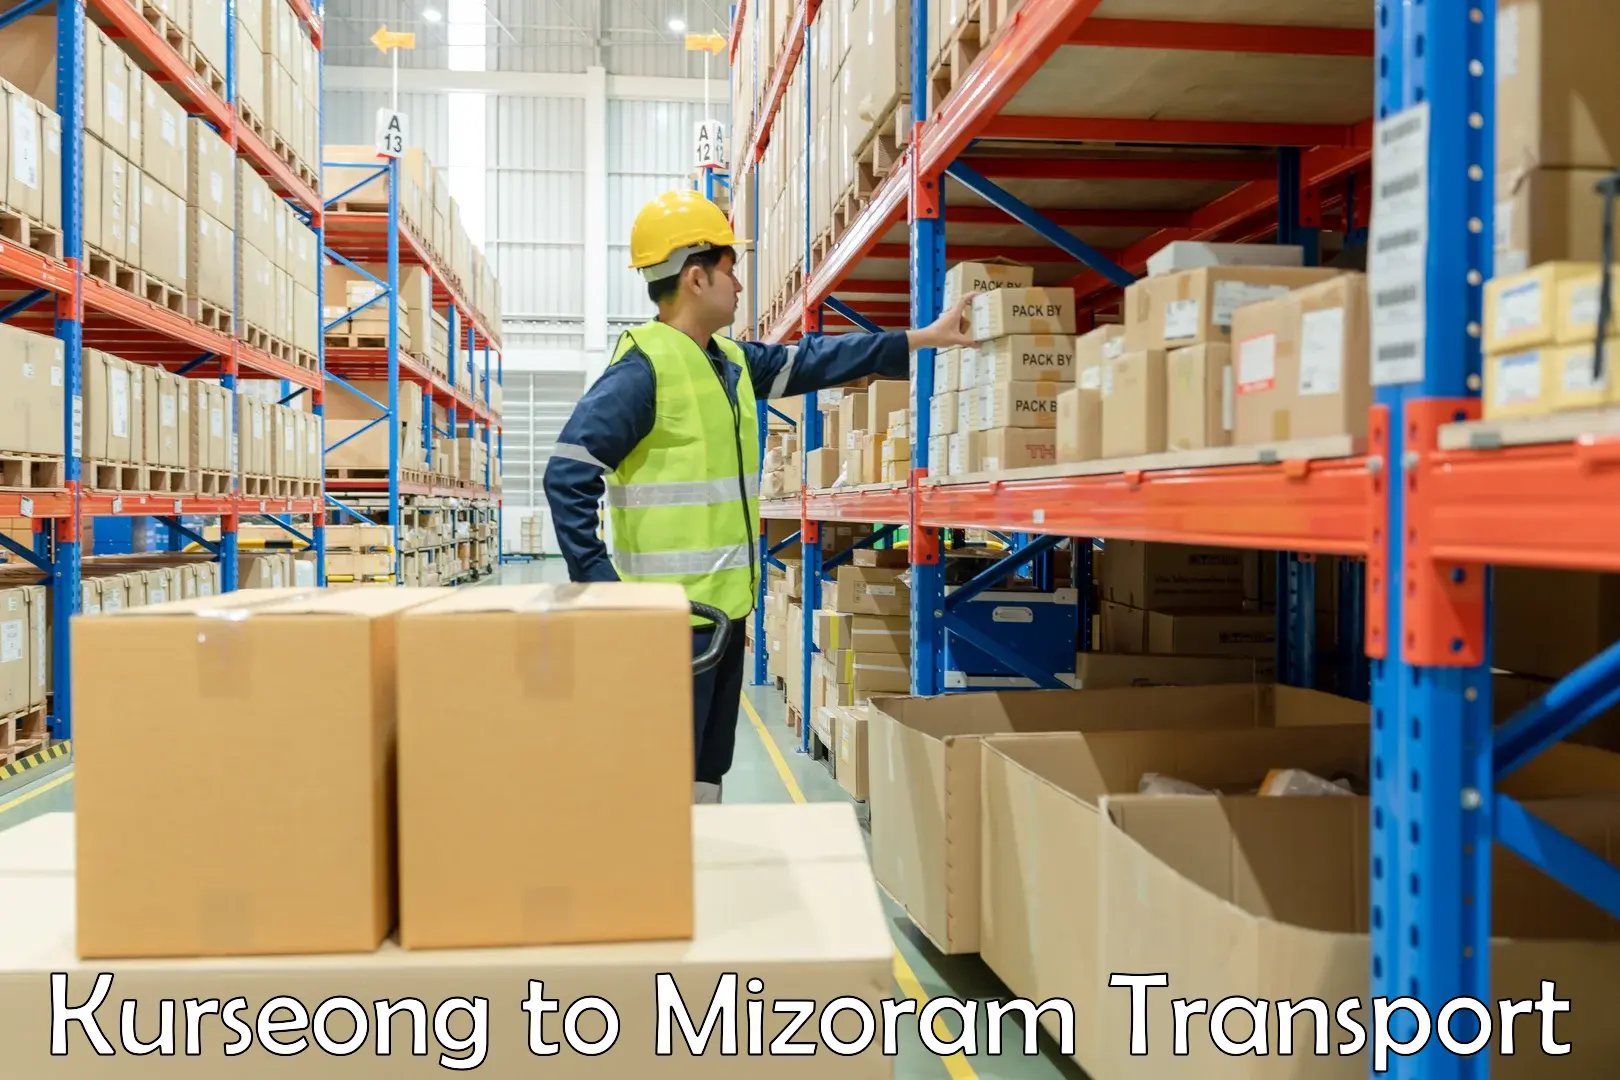 Furniture transport service Kurseong to Mizoram